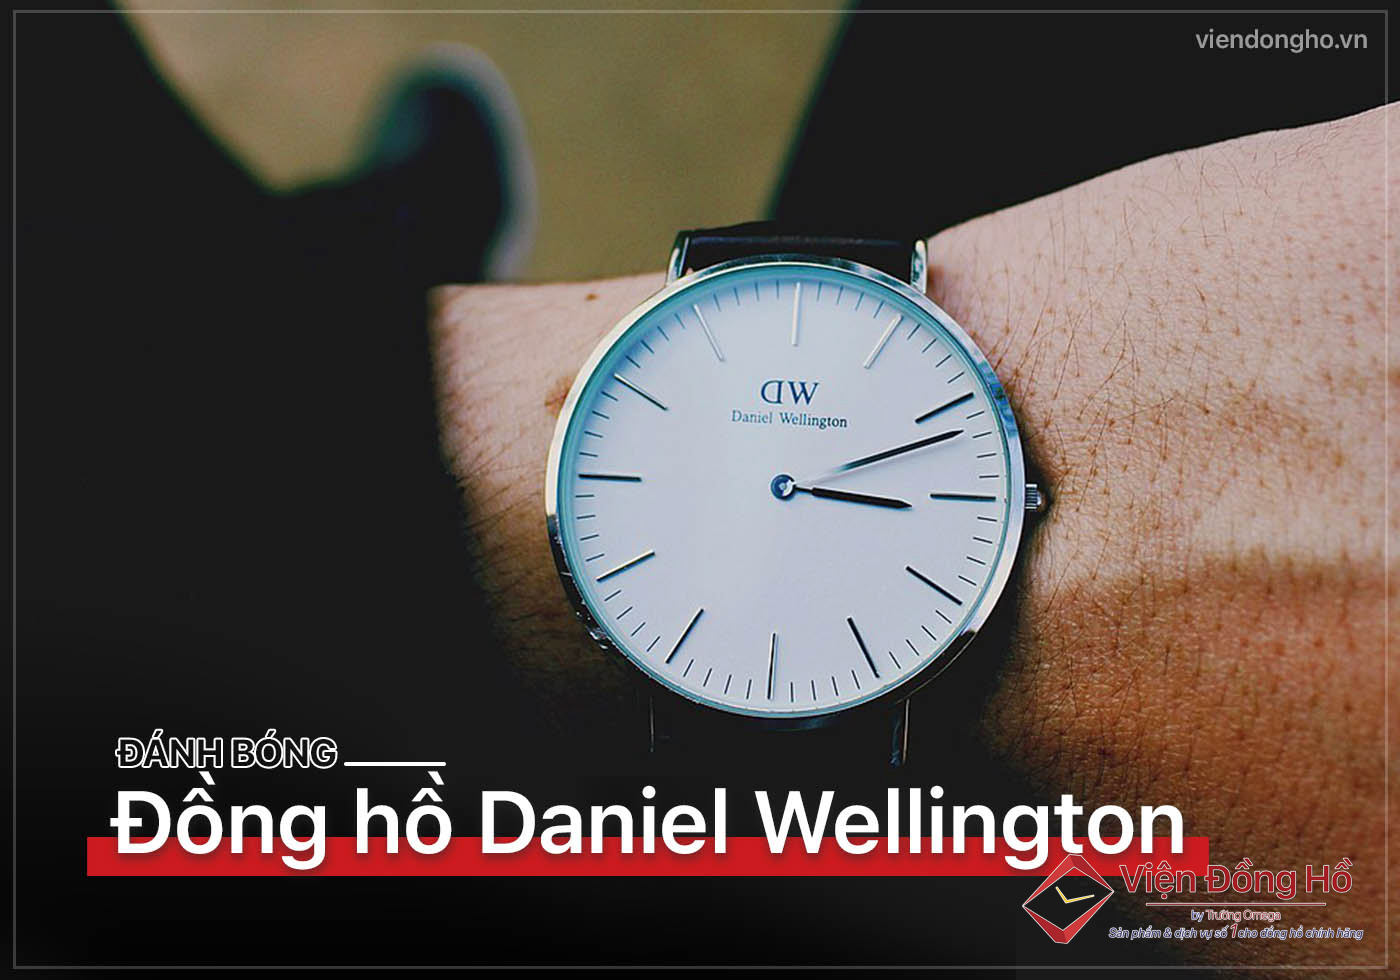 Danh bong dong ho Daniel Wellington 5